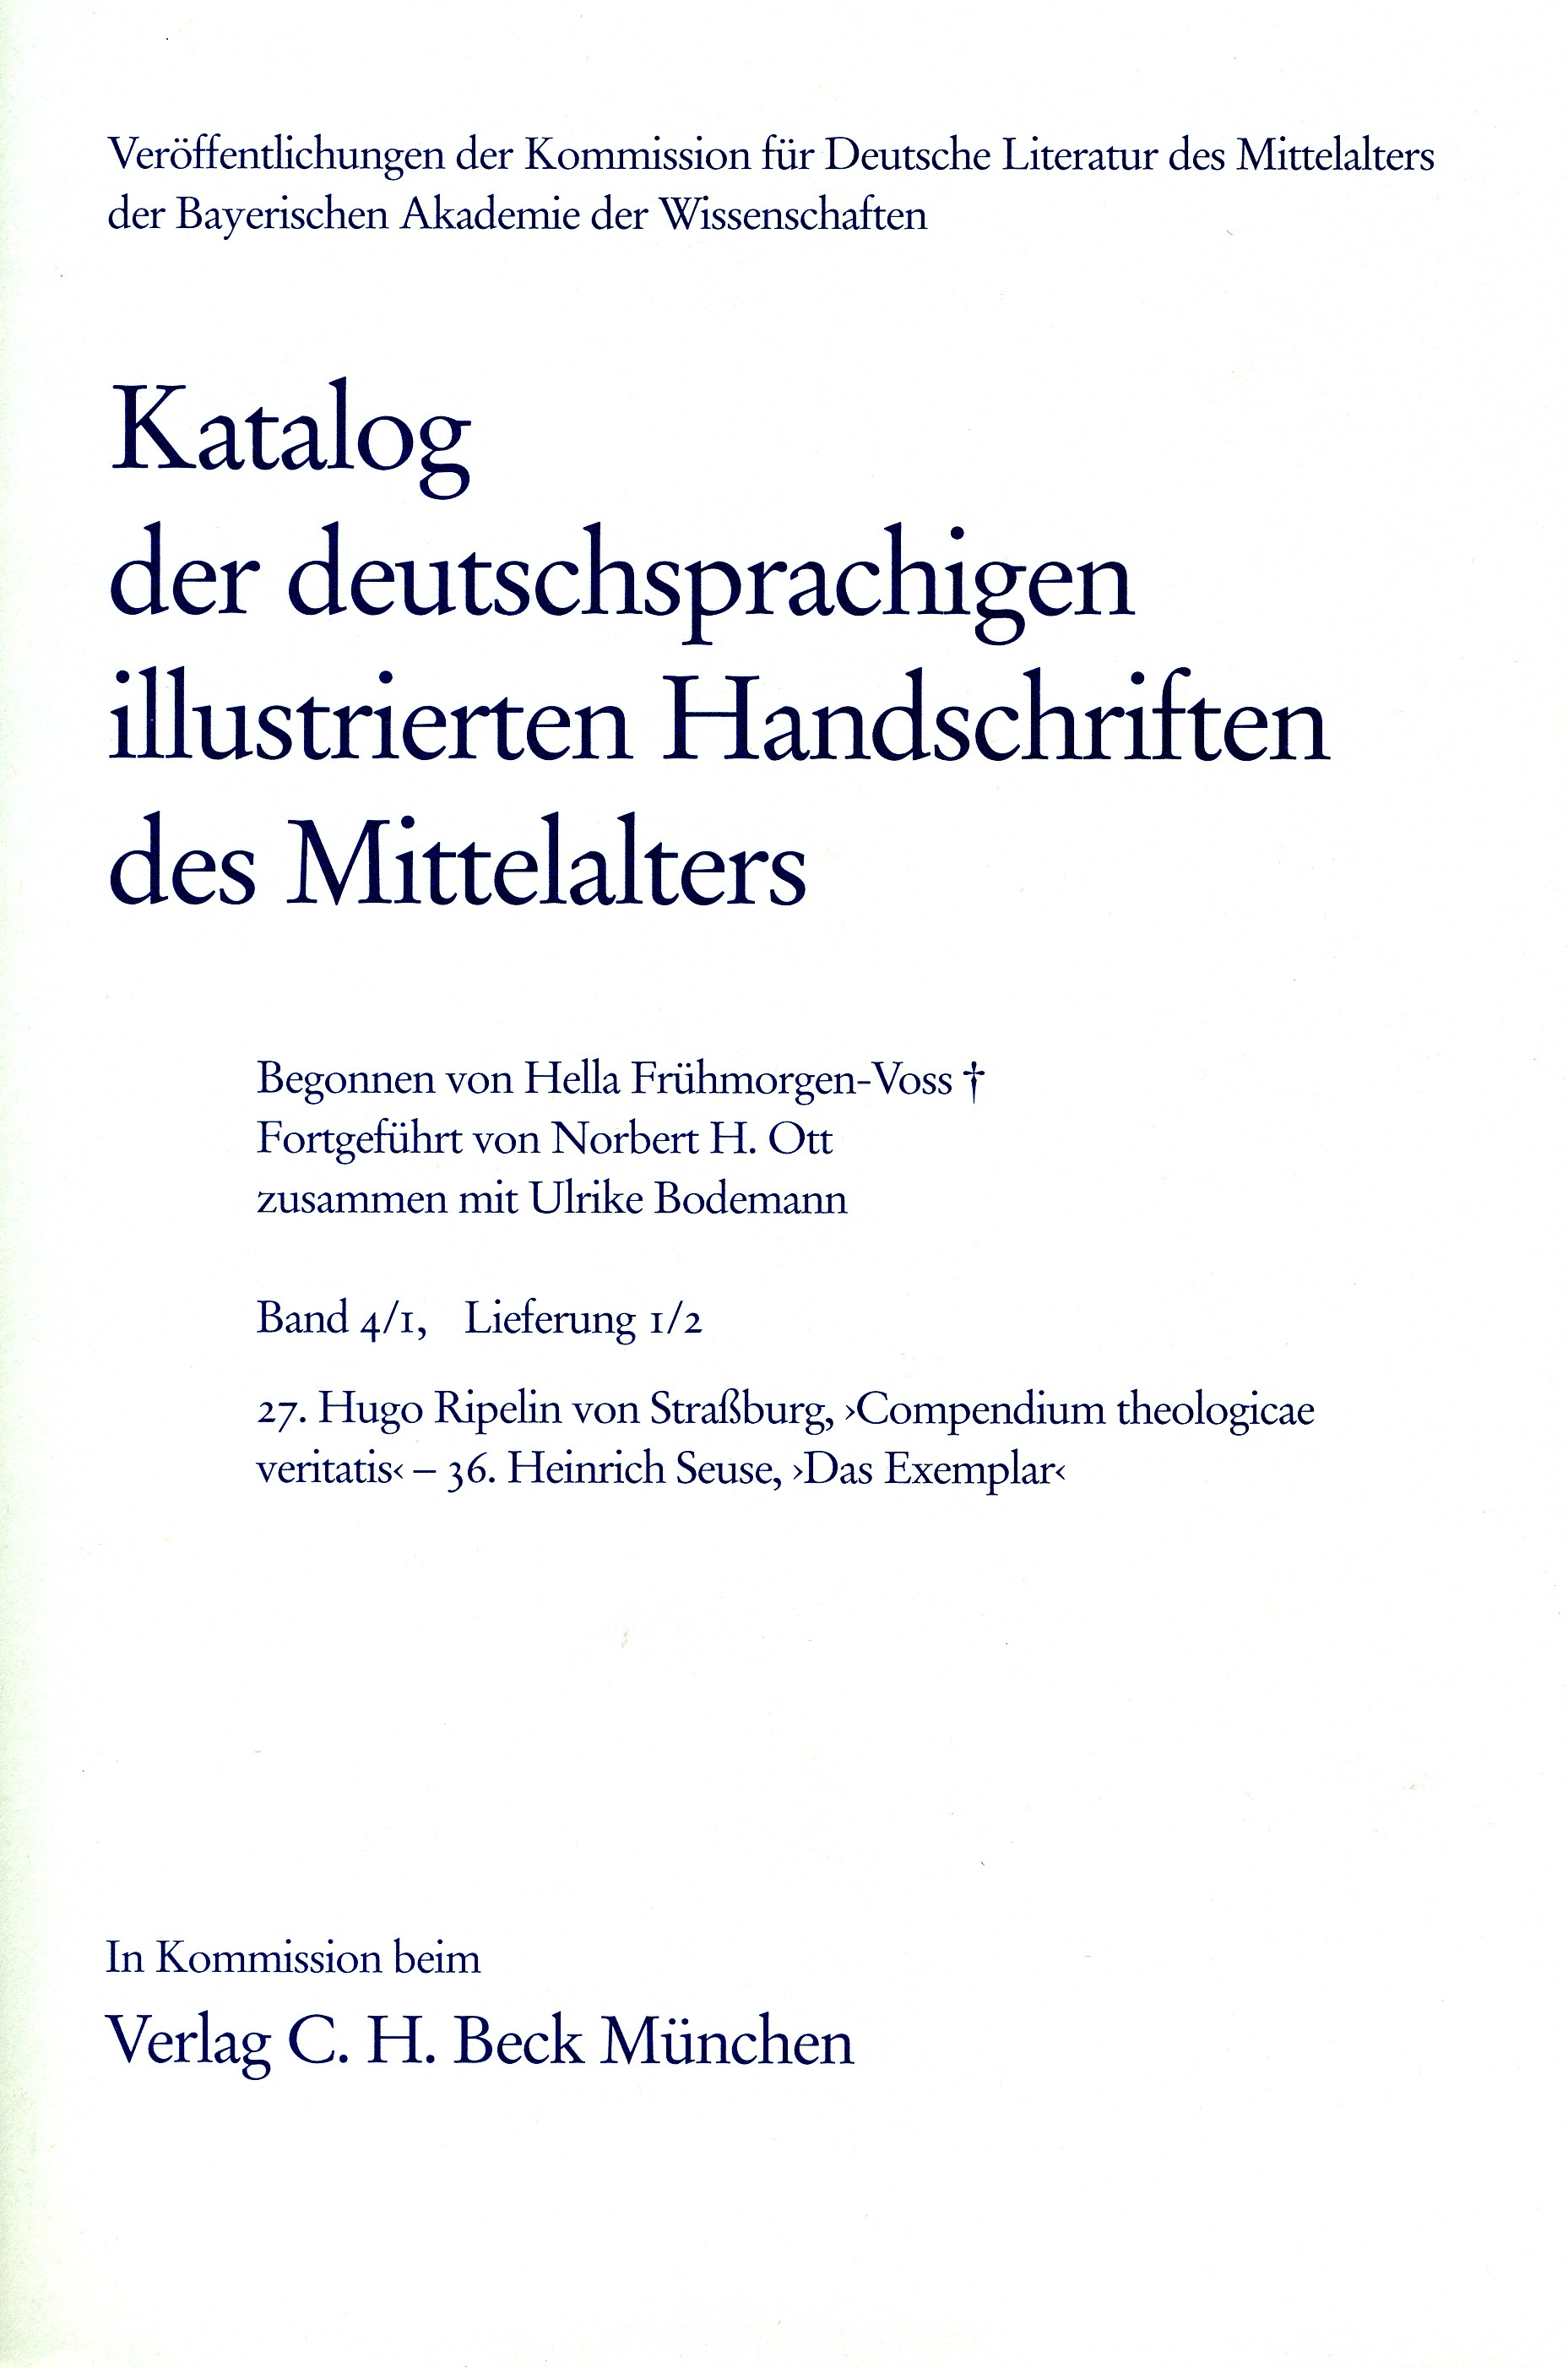 Cover: Frühmorgen-Voss / Bodemann, Ulrike, Katalog der deutschsprachigen illustrierten Handschriften des Mittelalters Band 4/1, Lfg. 1/2: 27-36